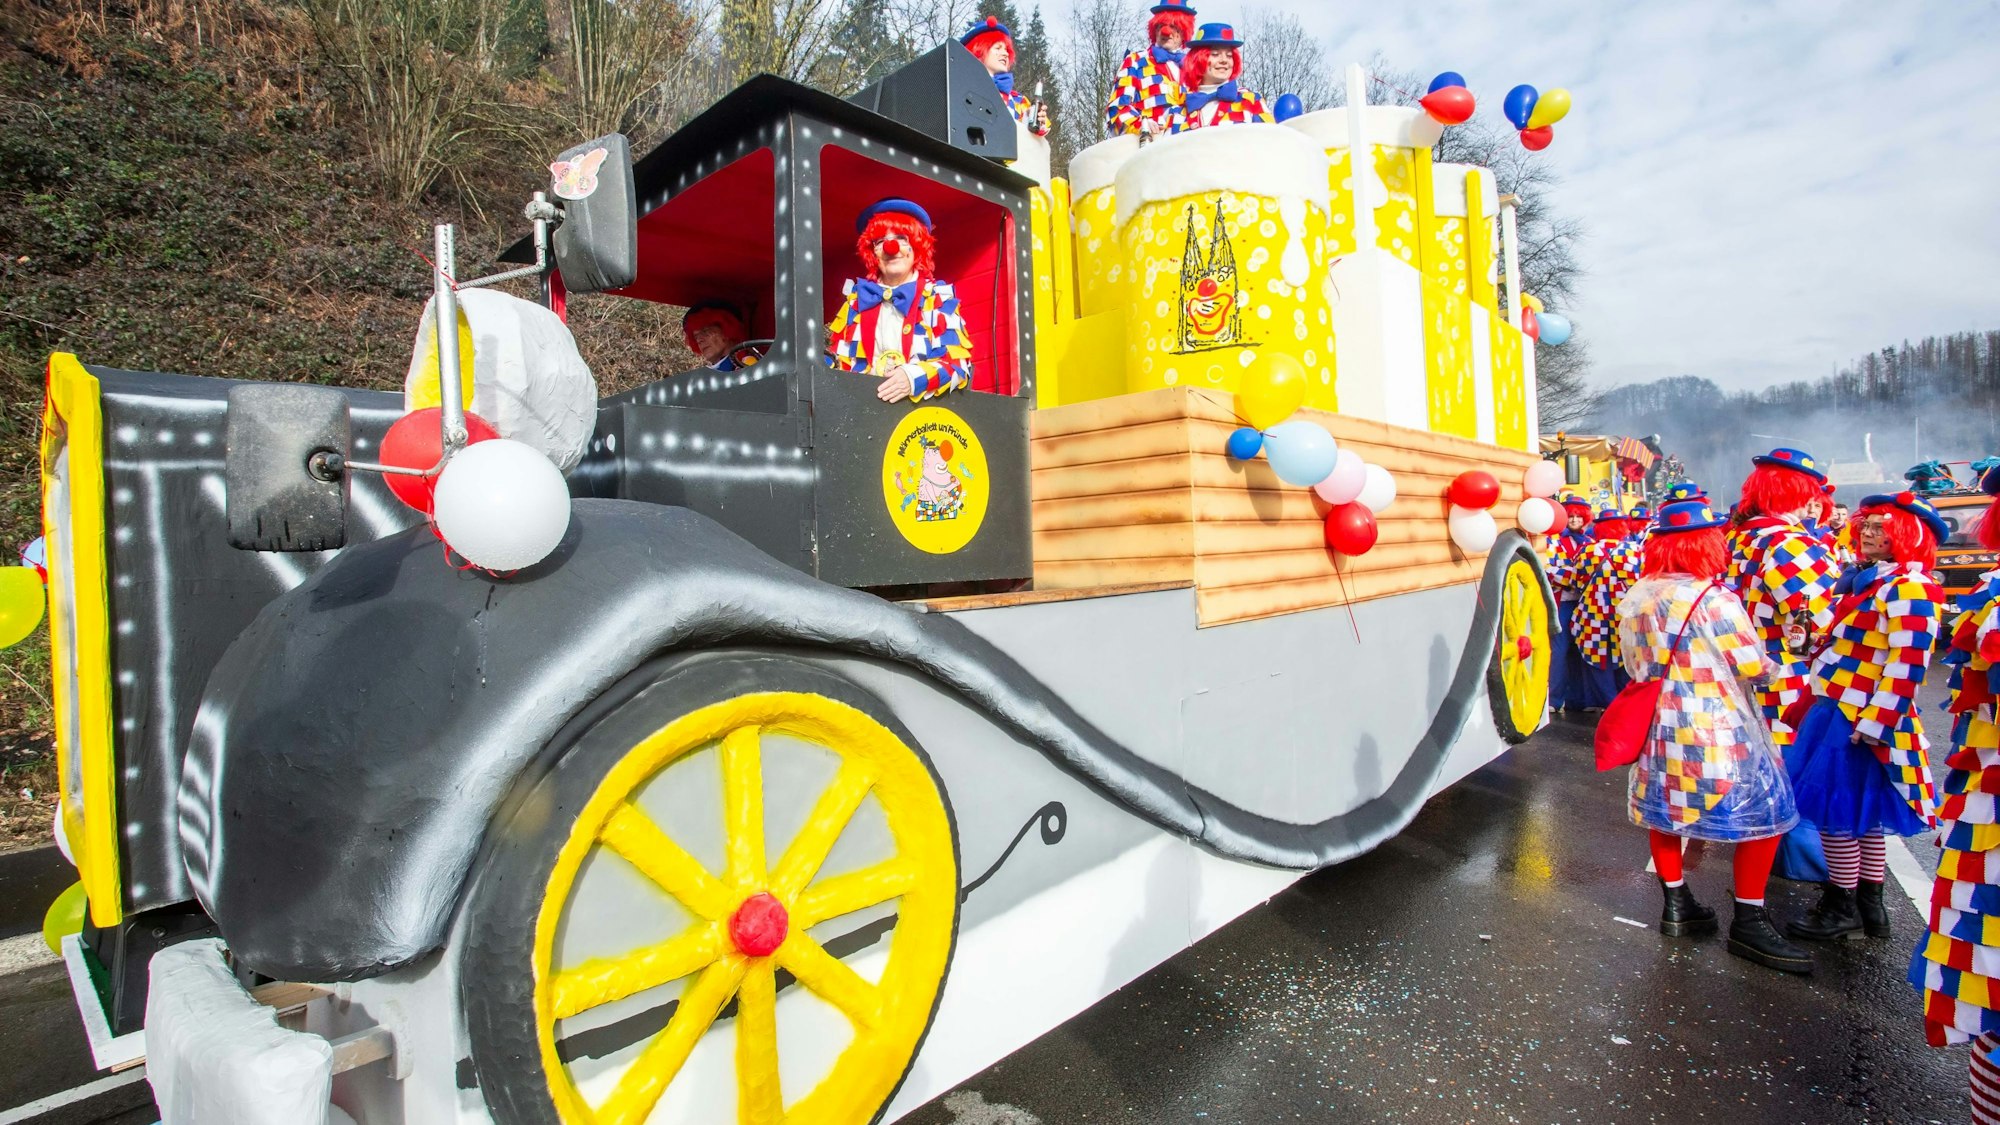 Ein Karnevalswagen im Stile eines Oldtimer-Lkw mit großen Kölschstangen inmitten feiernder Menschen.